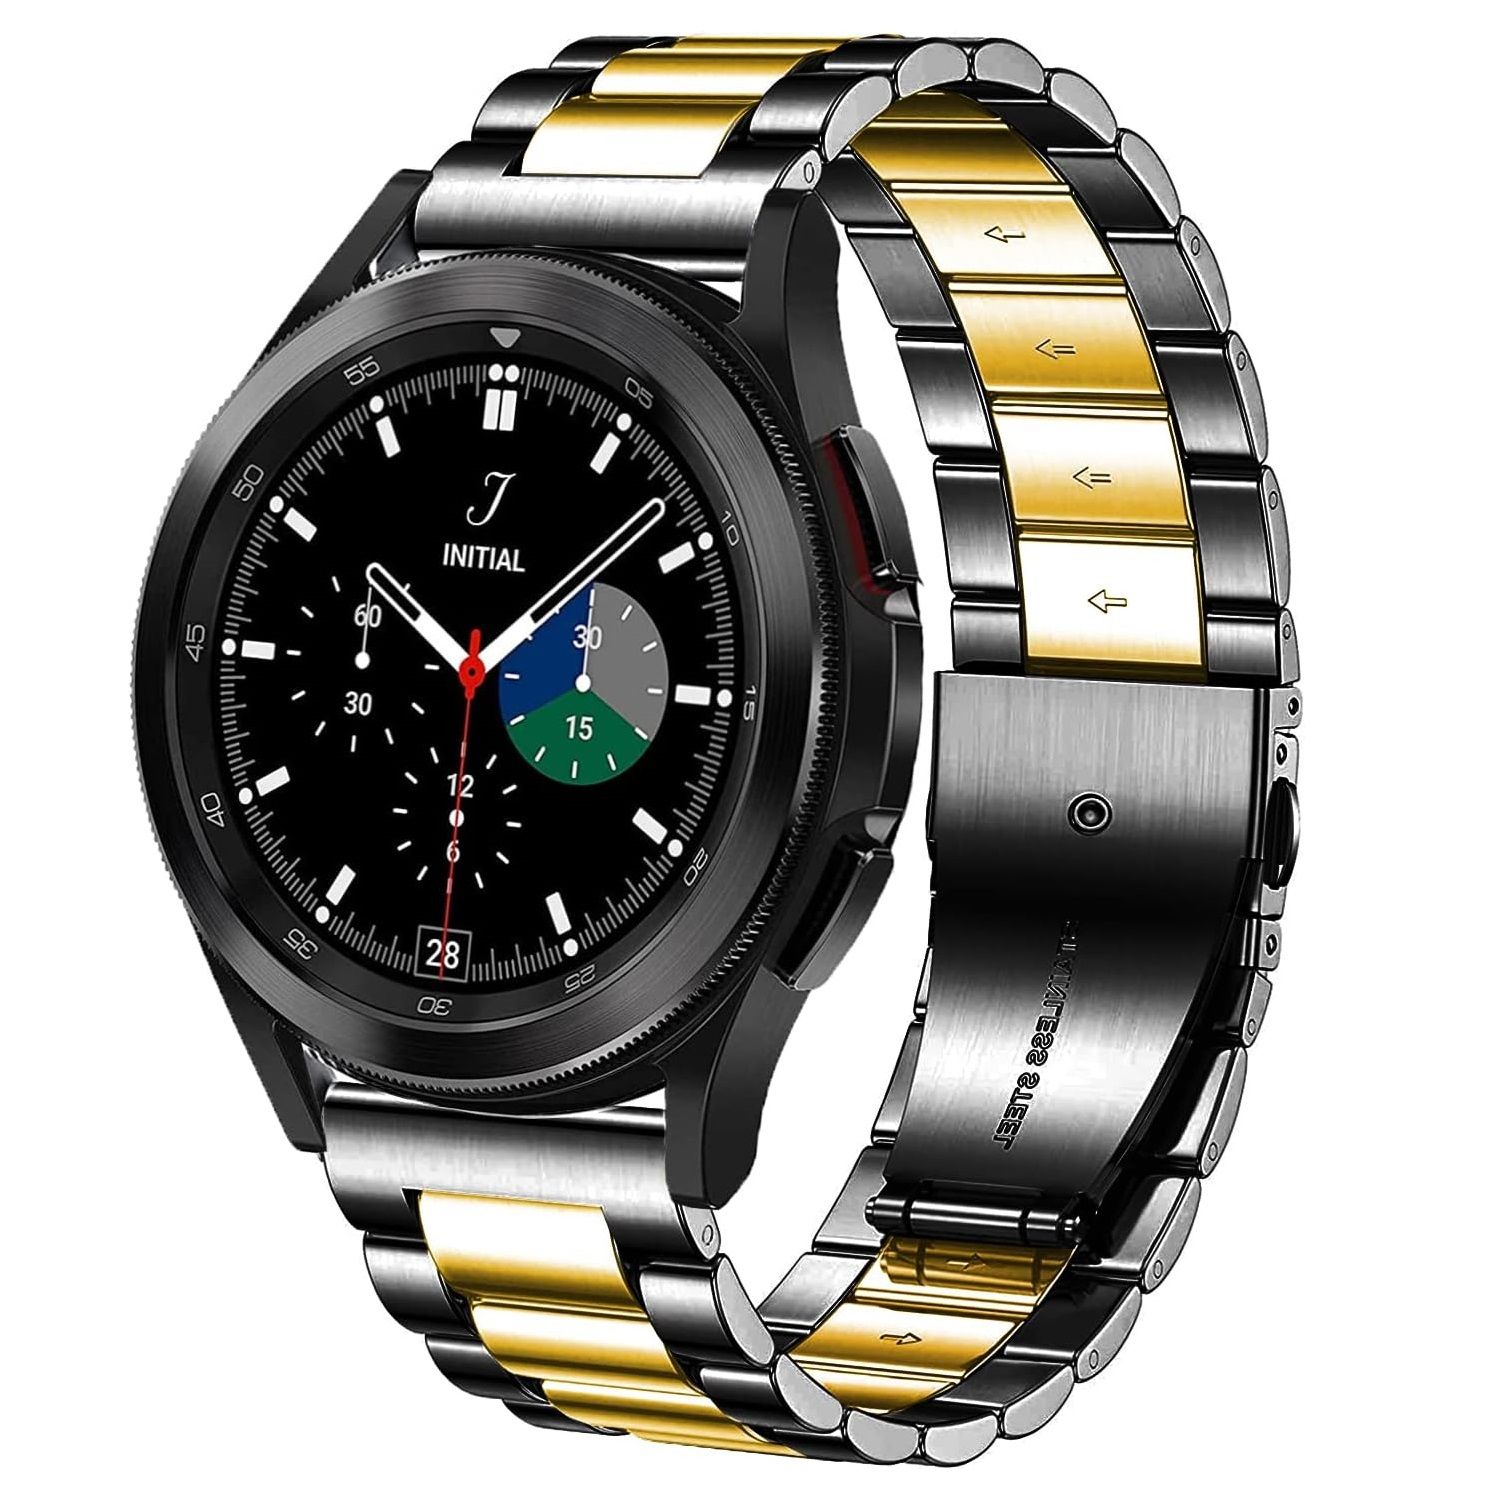 The best Samsung Galaxy Watch 5 watch bands